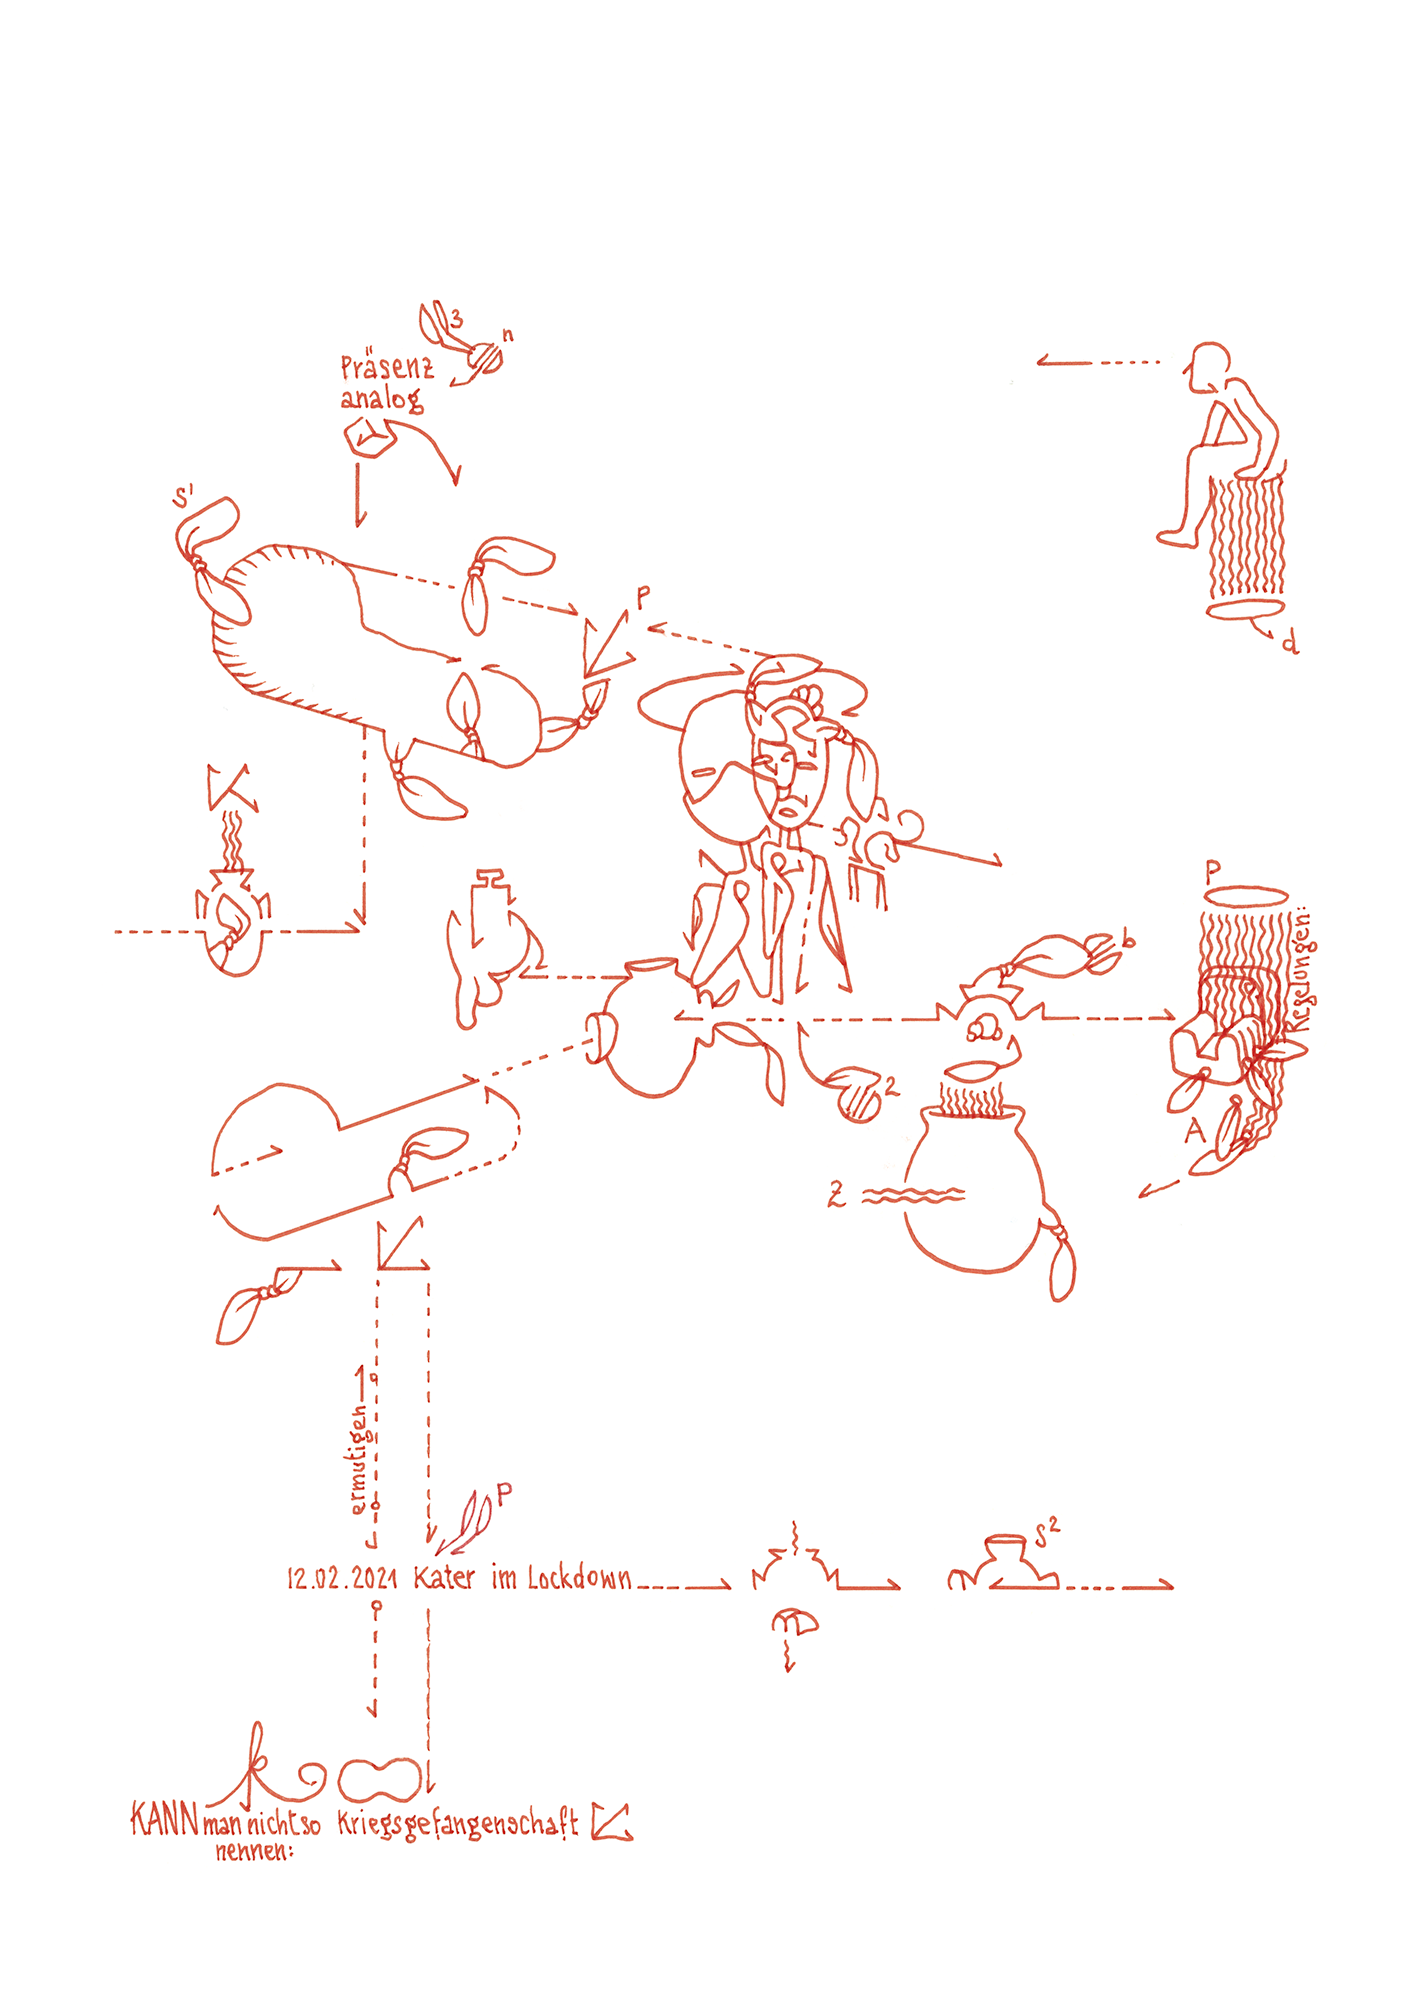 Hannes Kater: Tageszeichnung (Zeichnung/drawing) vom 12.02.2021 (1414 x 2000 Pixel)